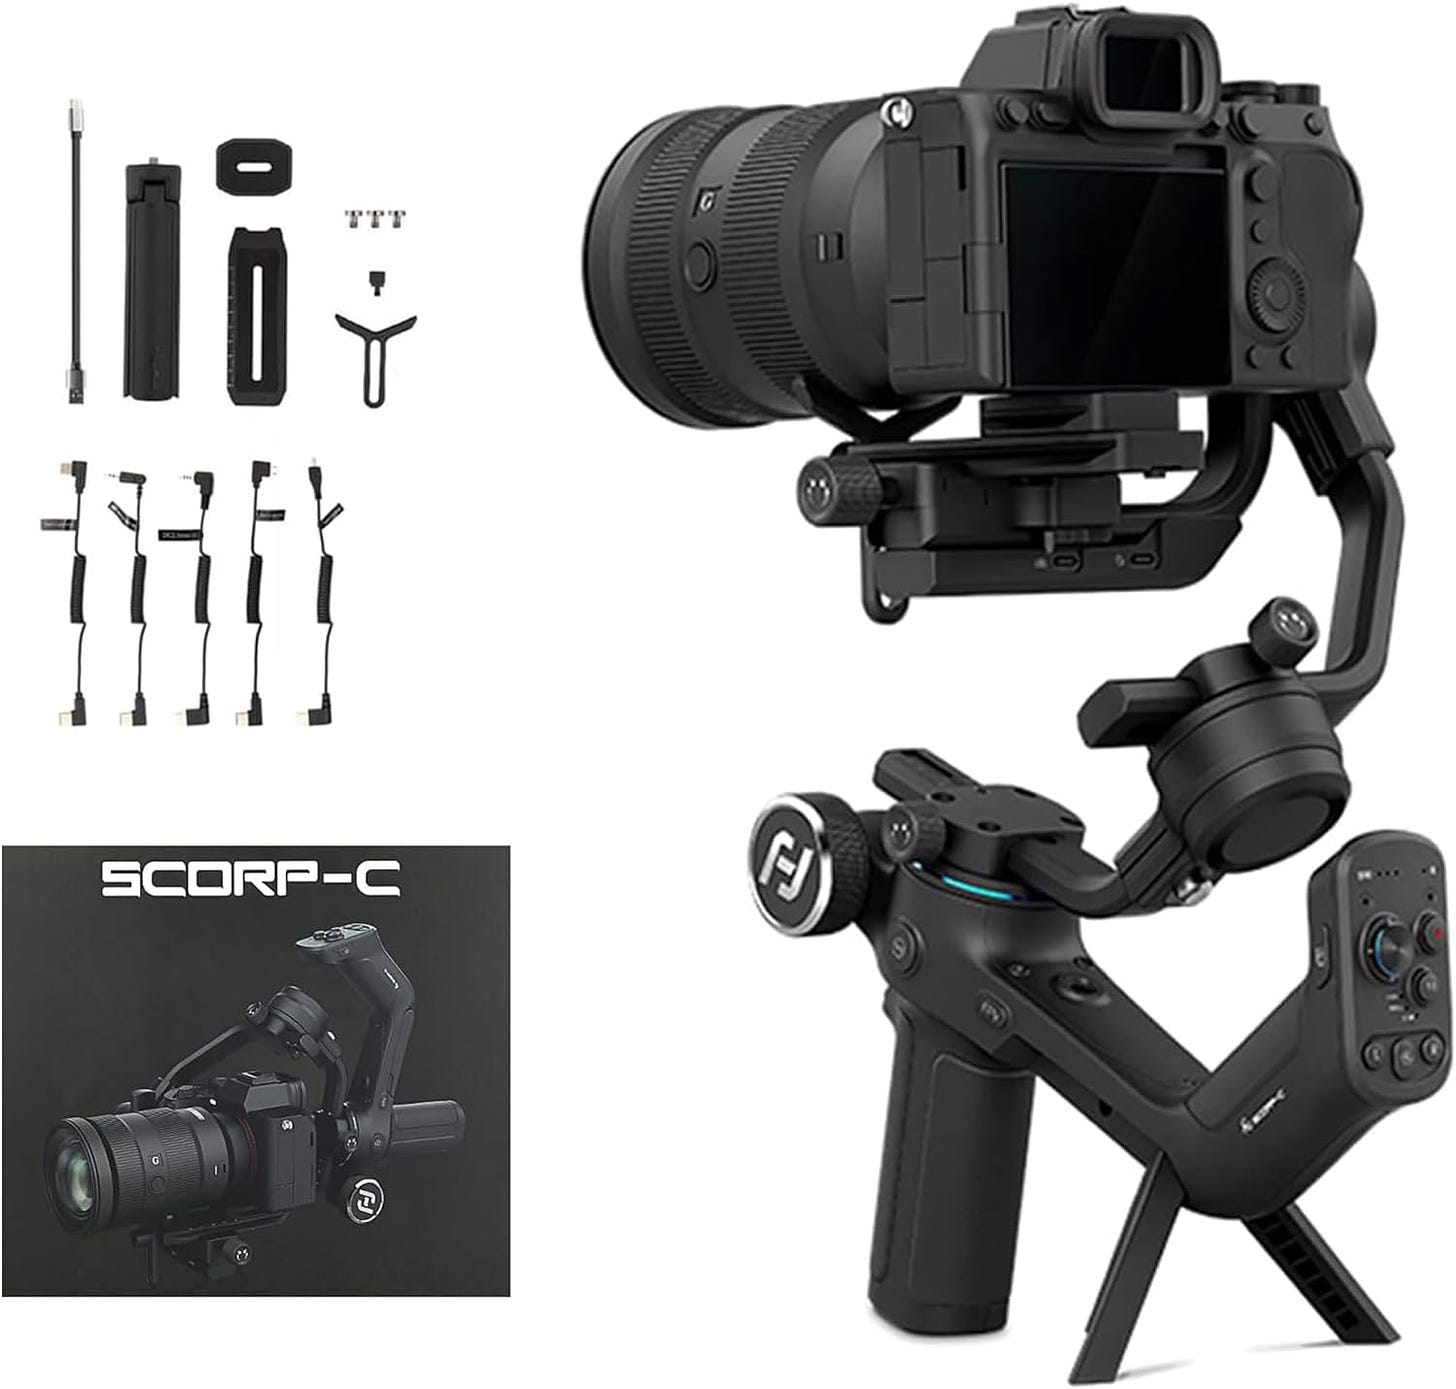 FeiyuTech SCORP-C 3-Axis Handheld Gimbal Camera Stabilizer: